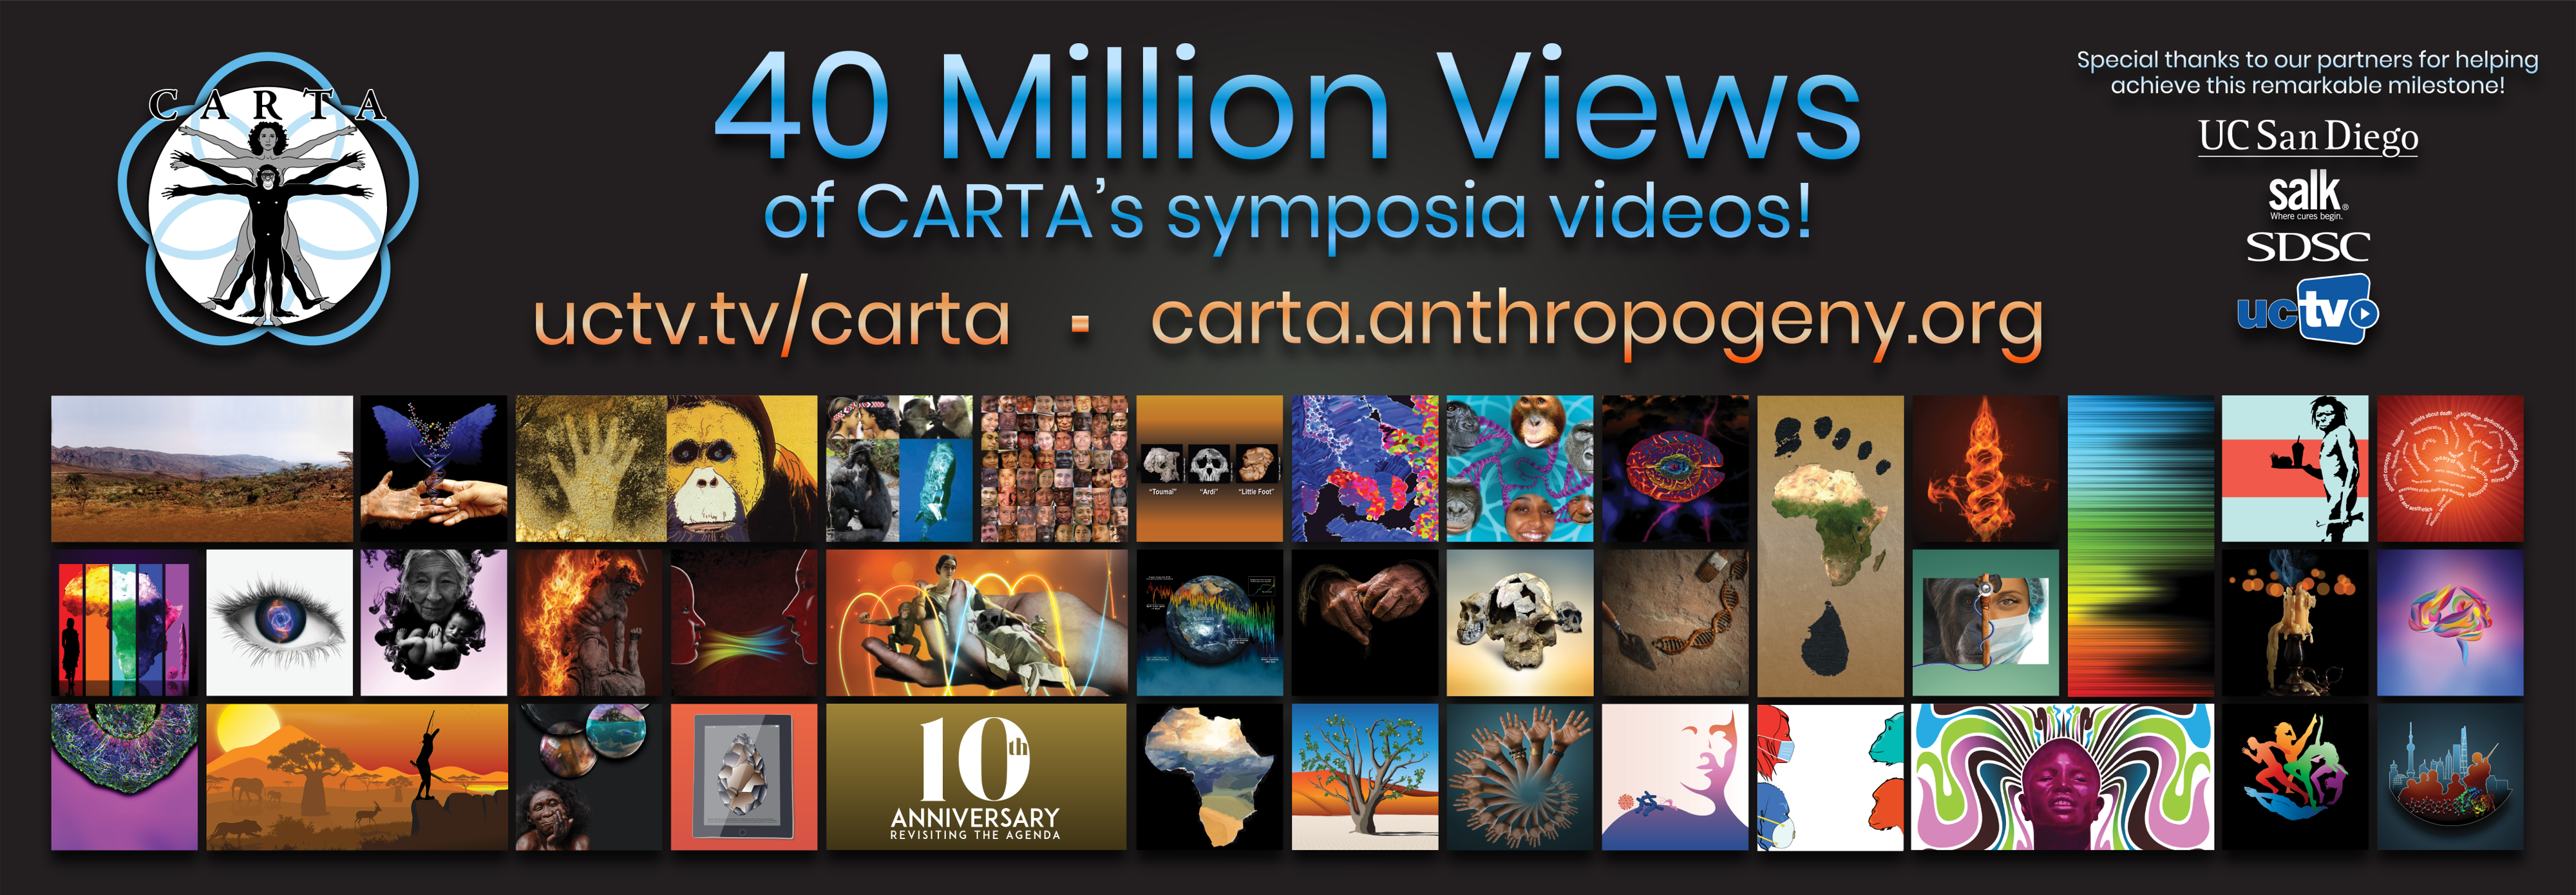 40 Million+ Views of CARTA Symposia Videos